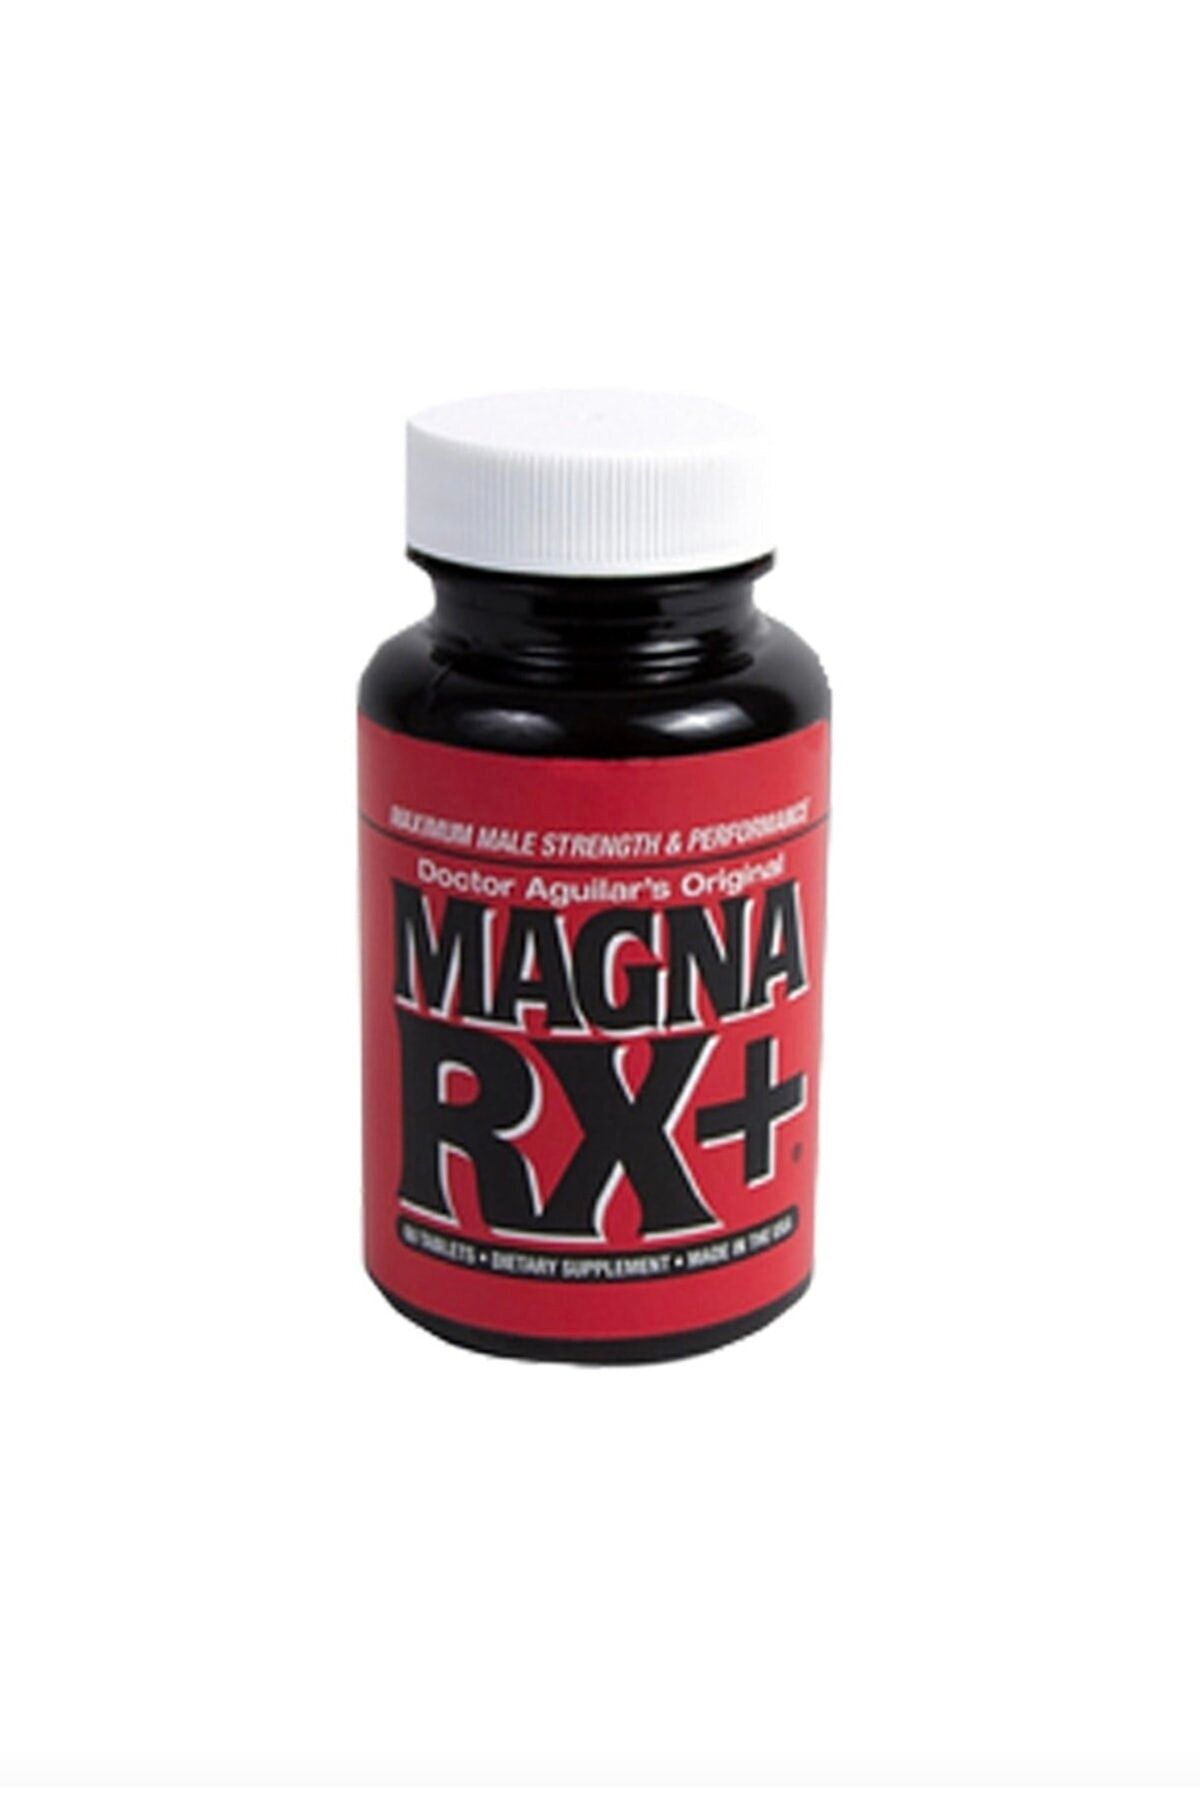 Snowy Magna Rx Cinsel Sertleştirici & Büyütücü / Magna Rx Sex Enhancer & Enlargement